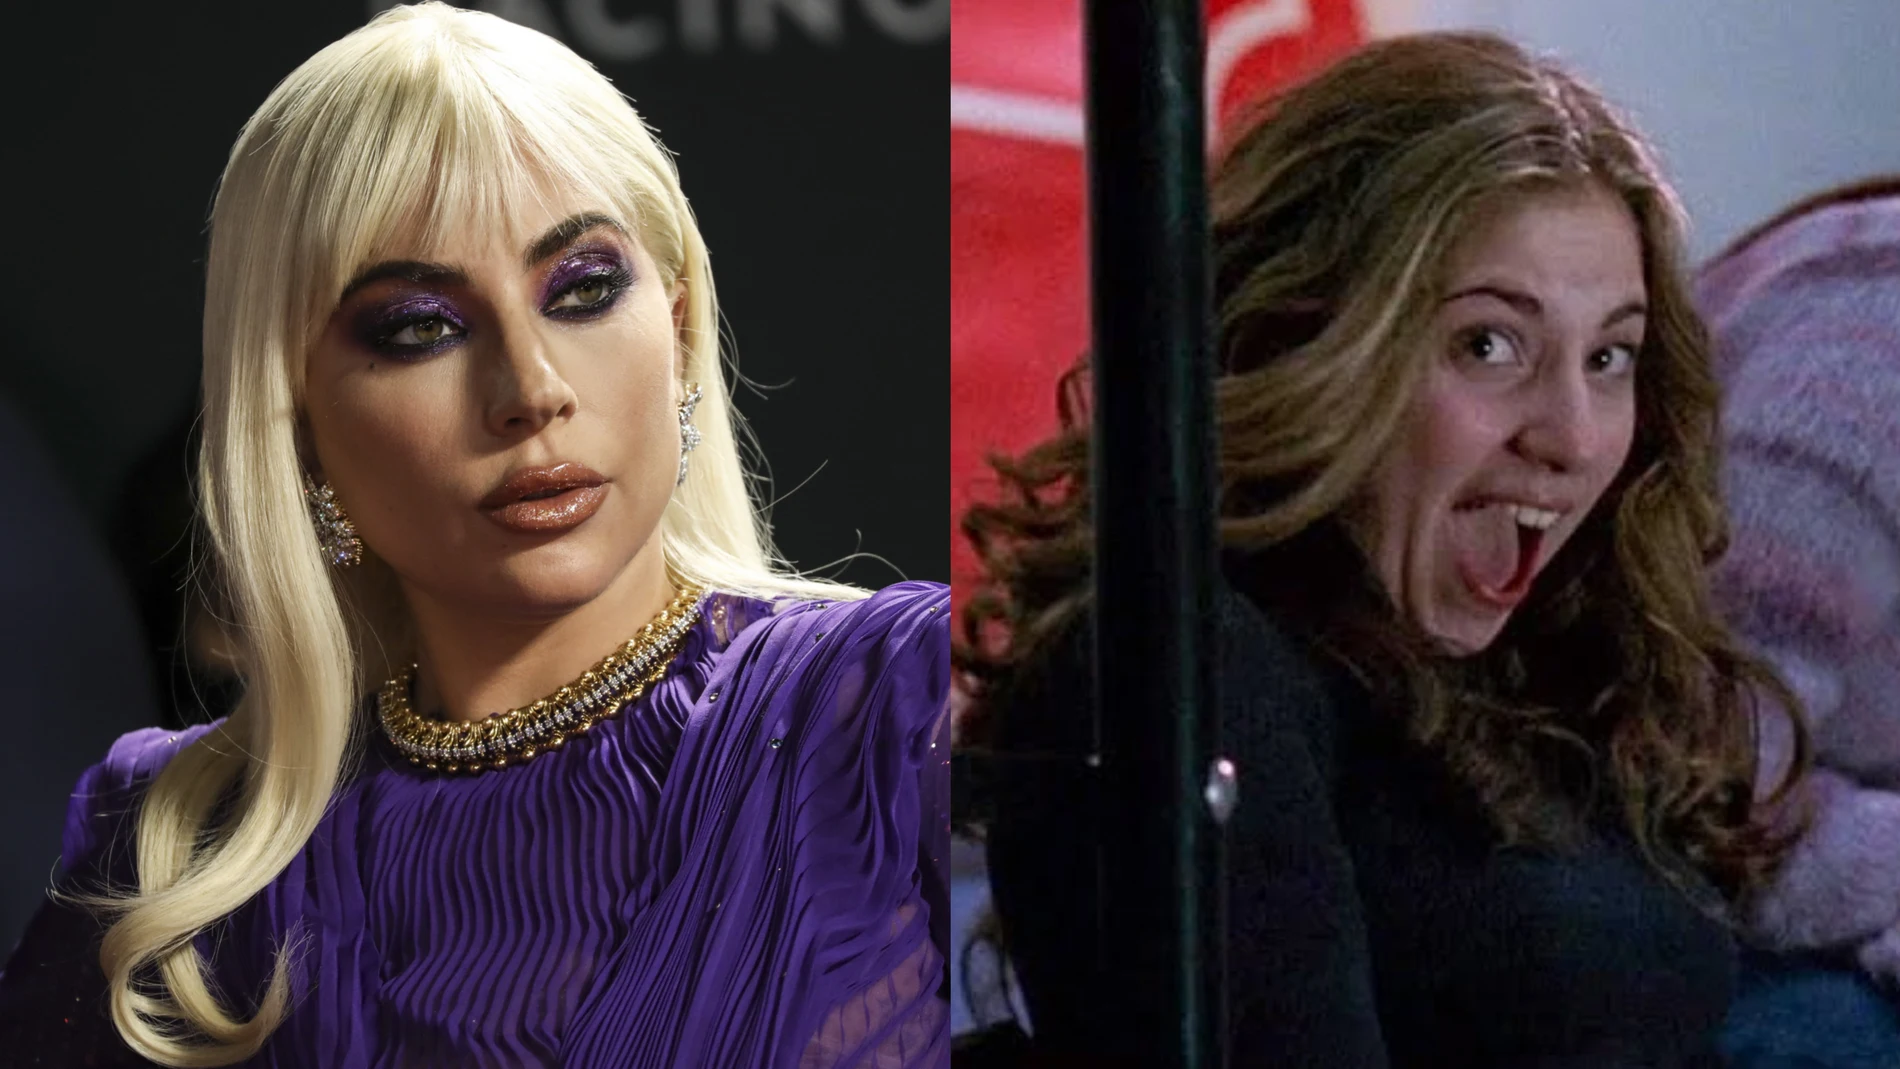 Lady Gaga reniega de su primer papel como actriz en Los Soprano: "No sabía"